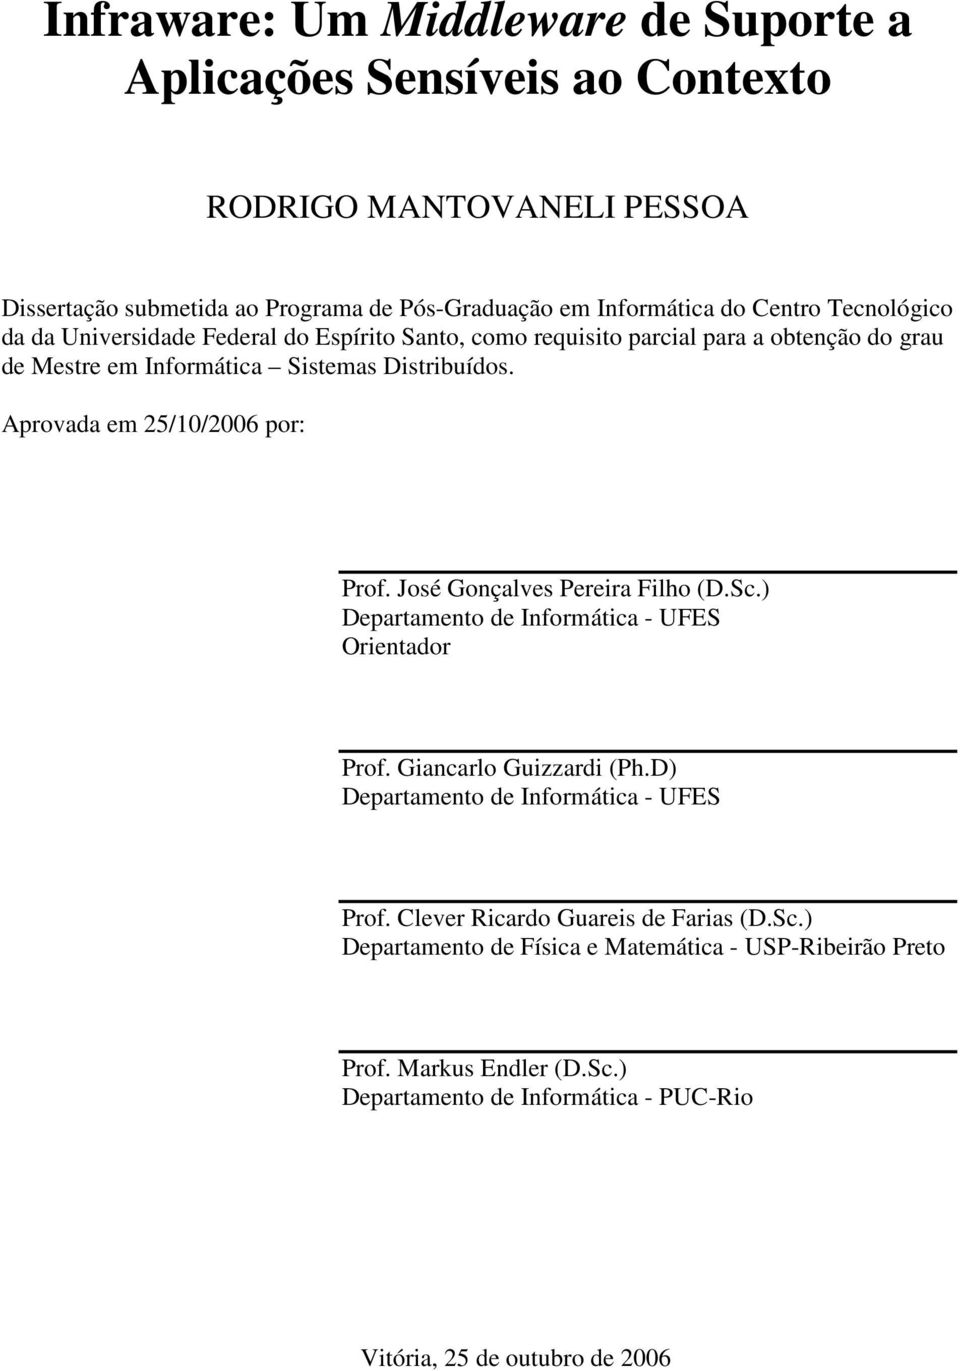 Aprovada em 25/10/2006 por: Prof. José Gonçalves Pereira Filho (D.Sc.) Departamento de Informática - UFES Orientador Prof. Giancarlo Guizzardi (Ph.